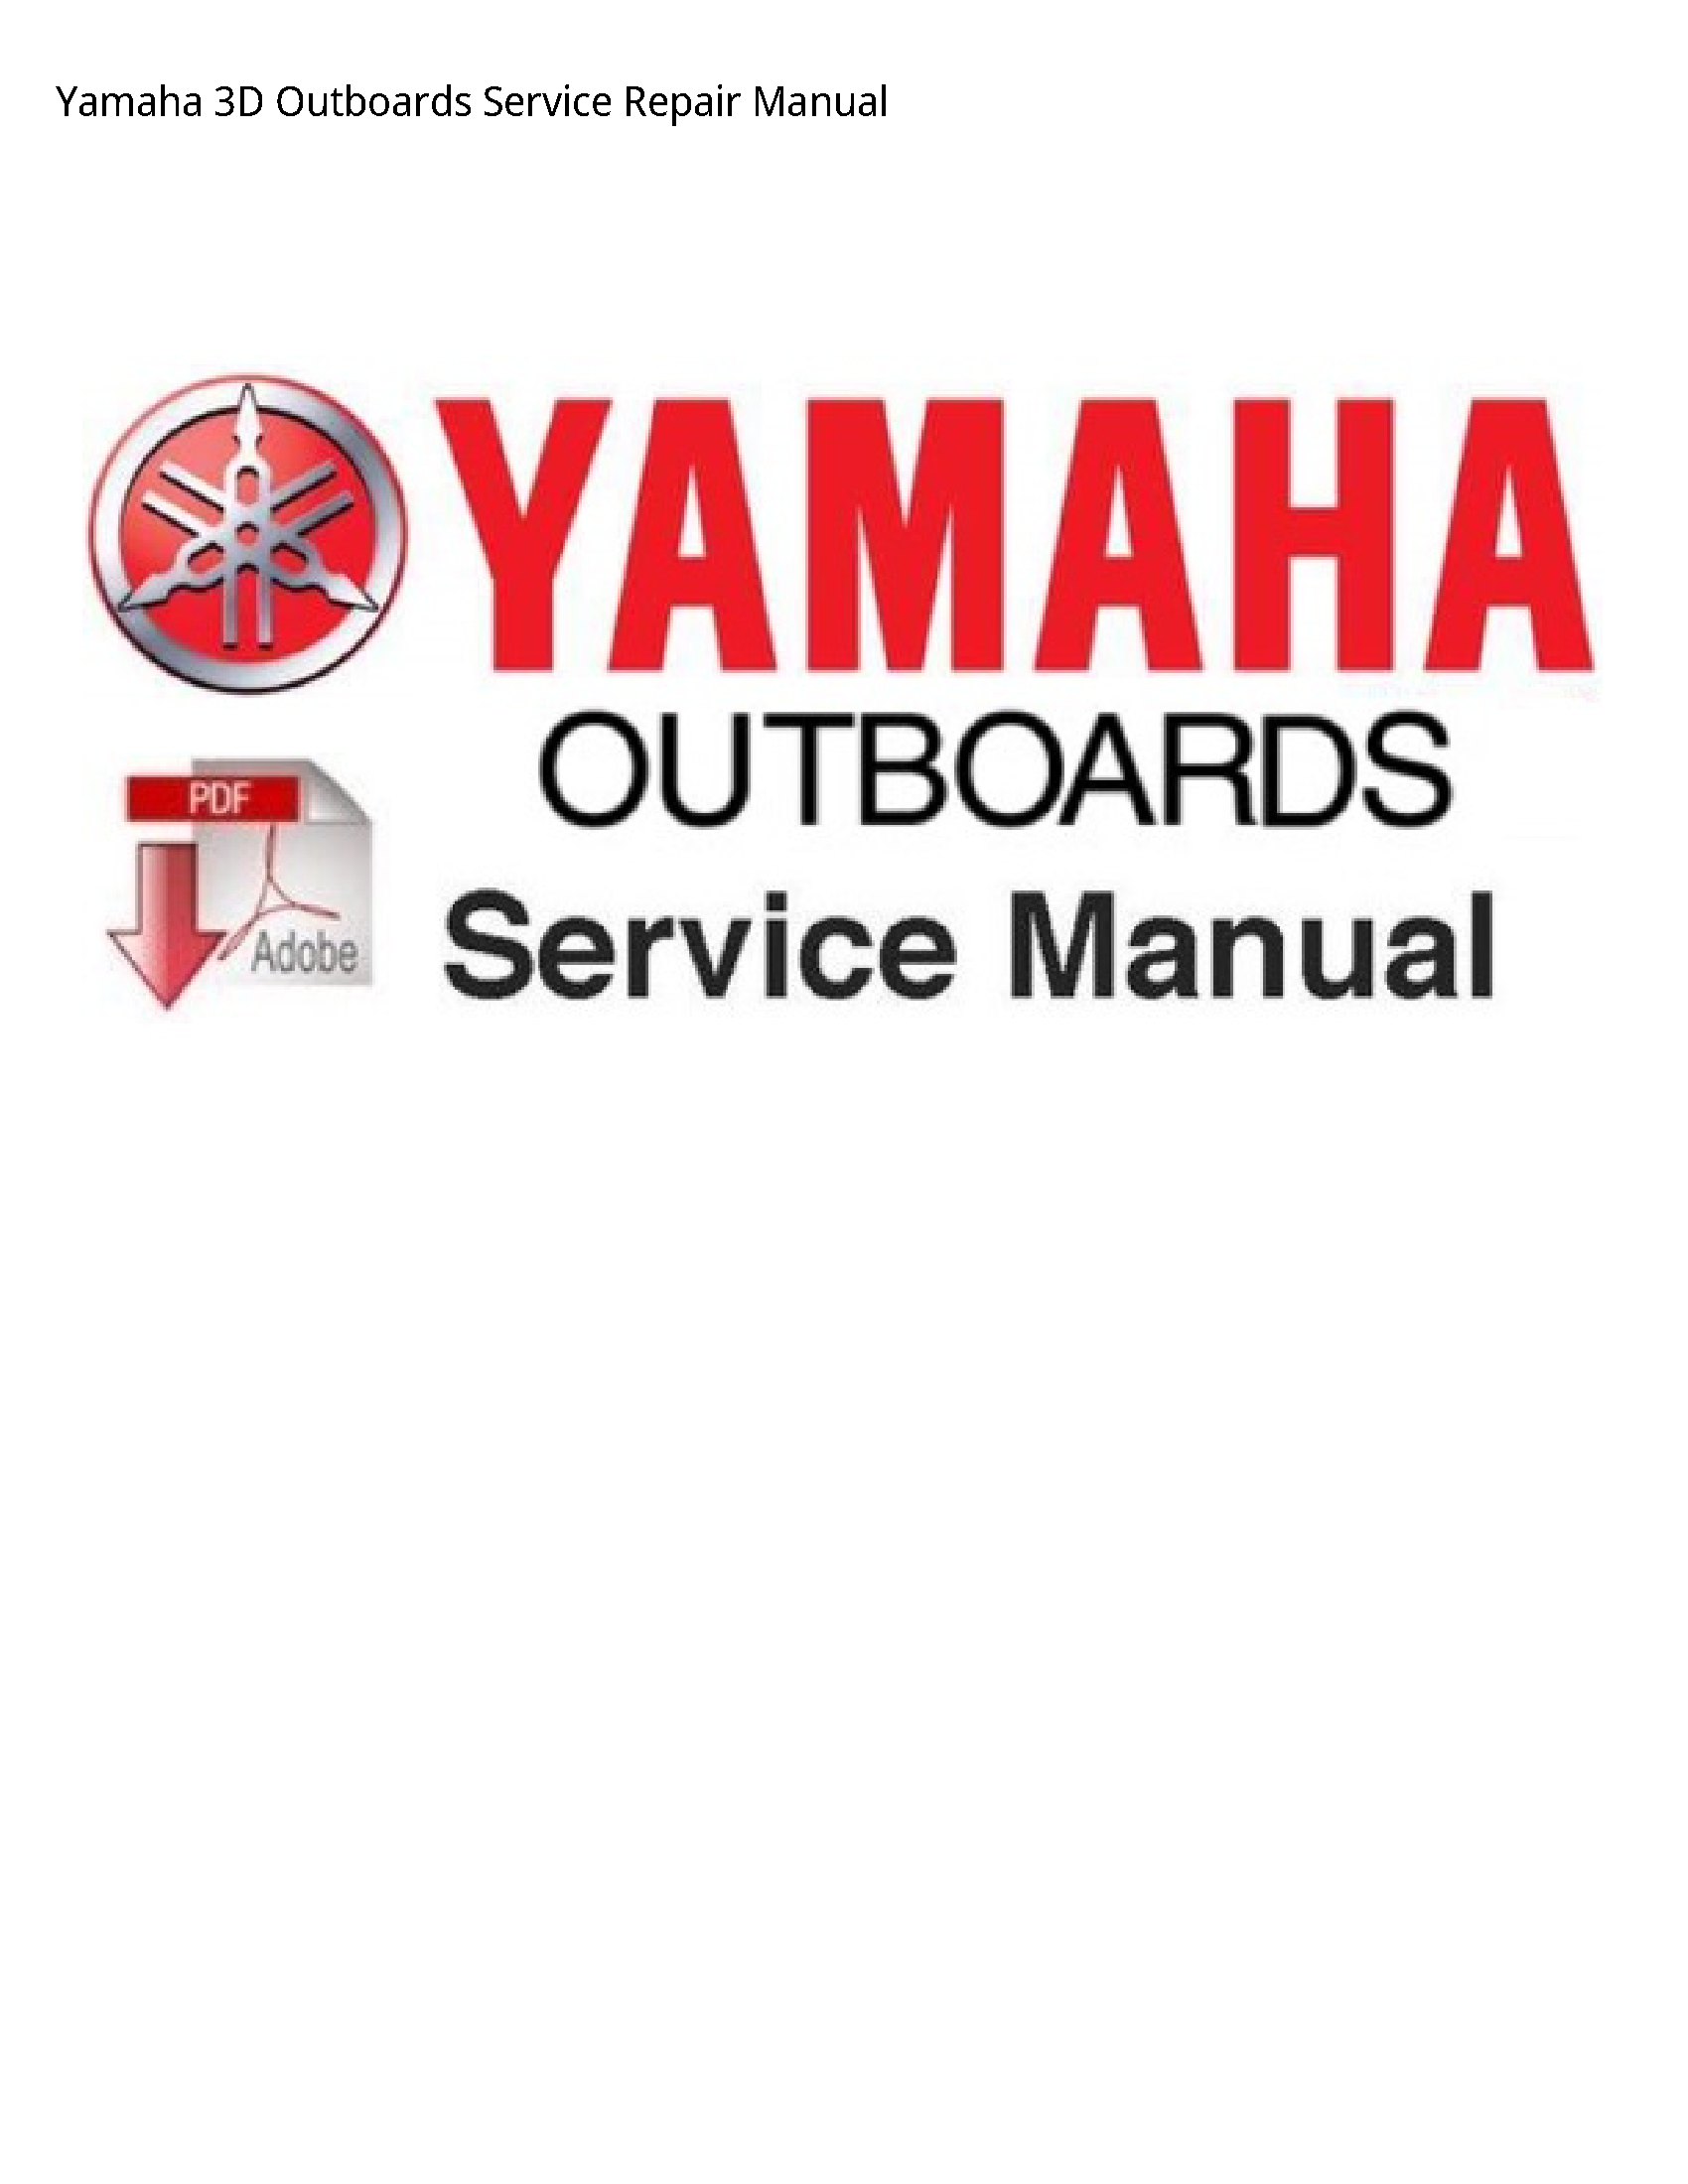 Yamaha 3D Outboards manual